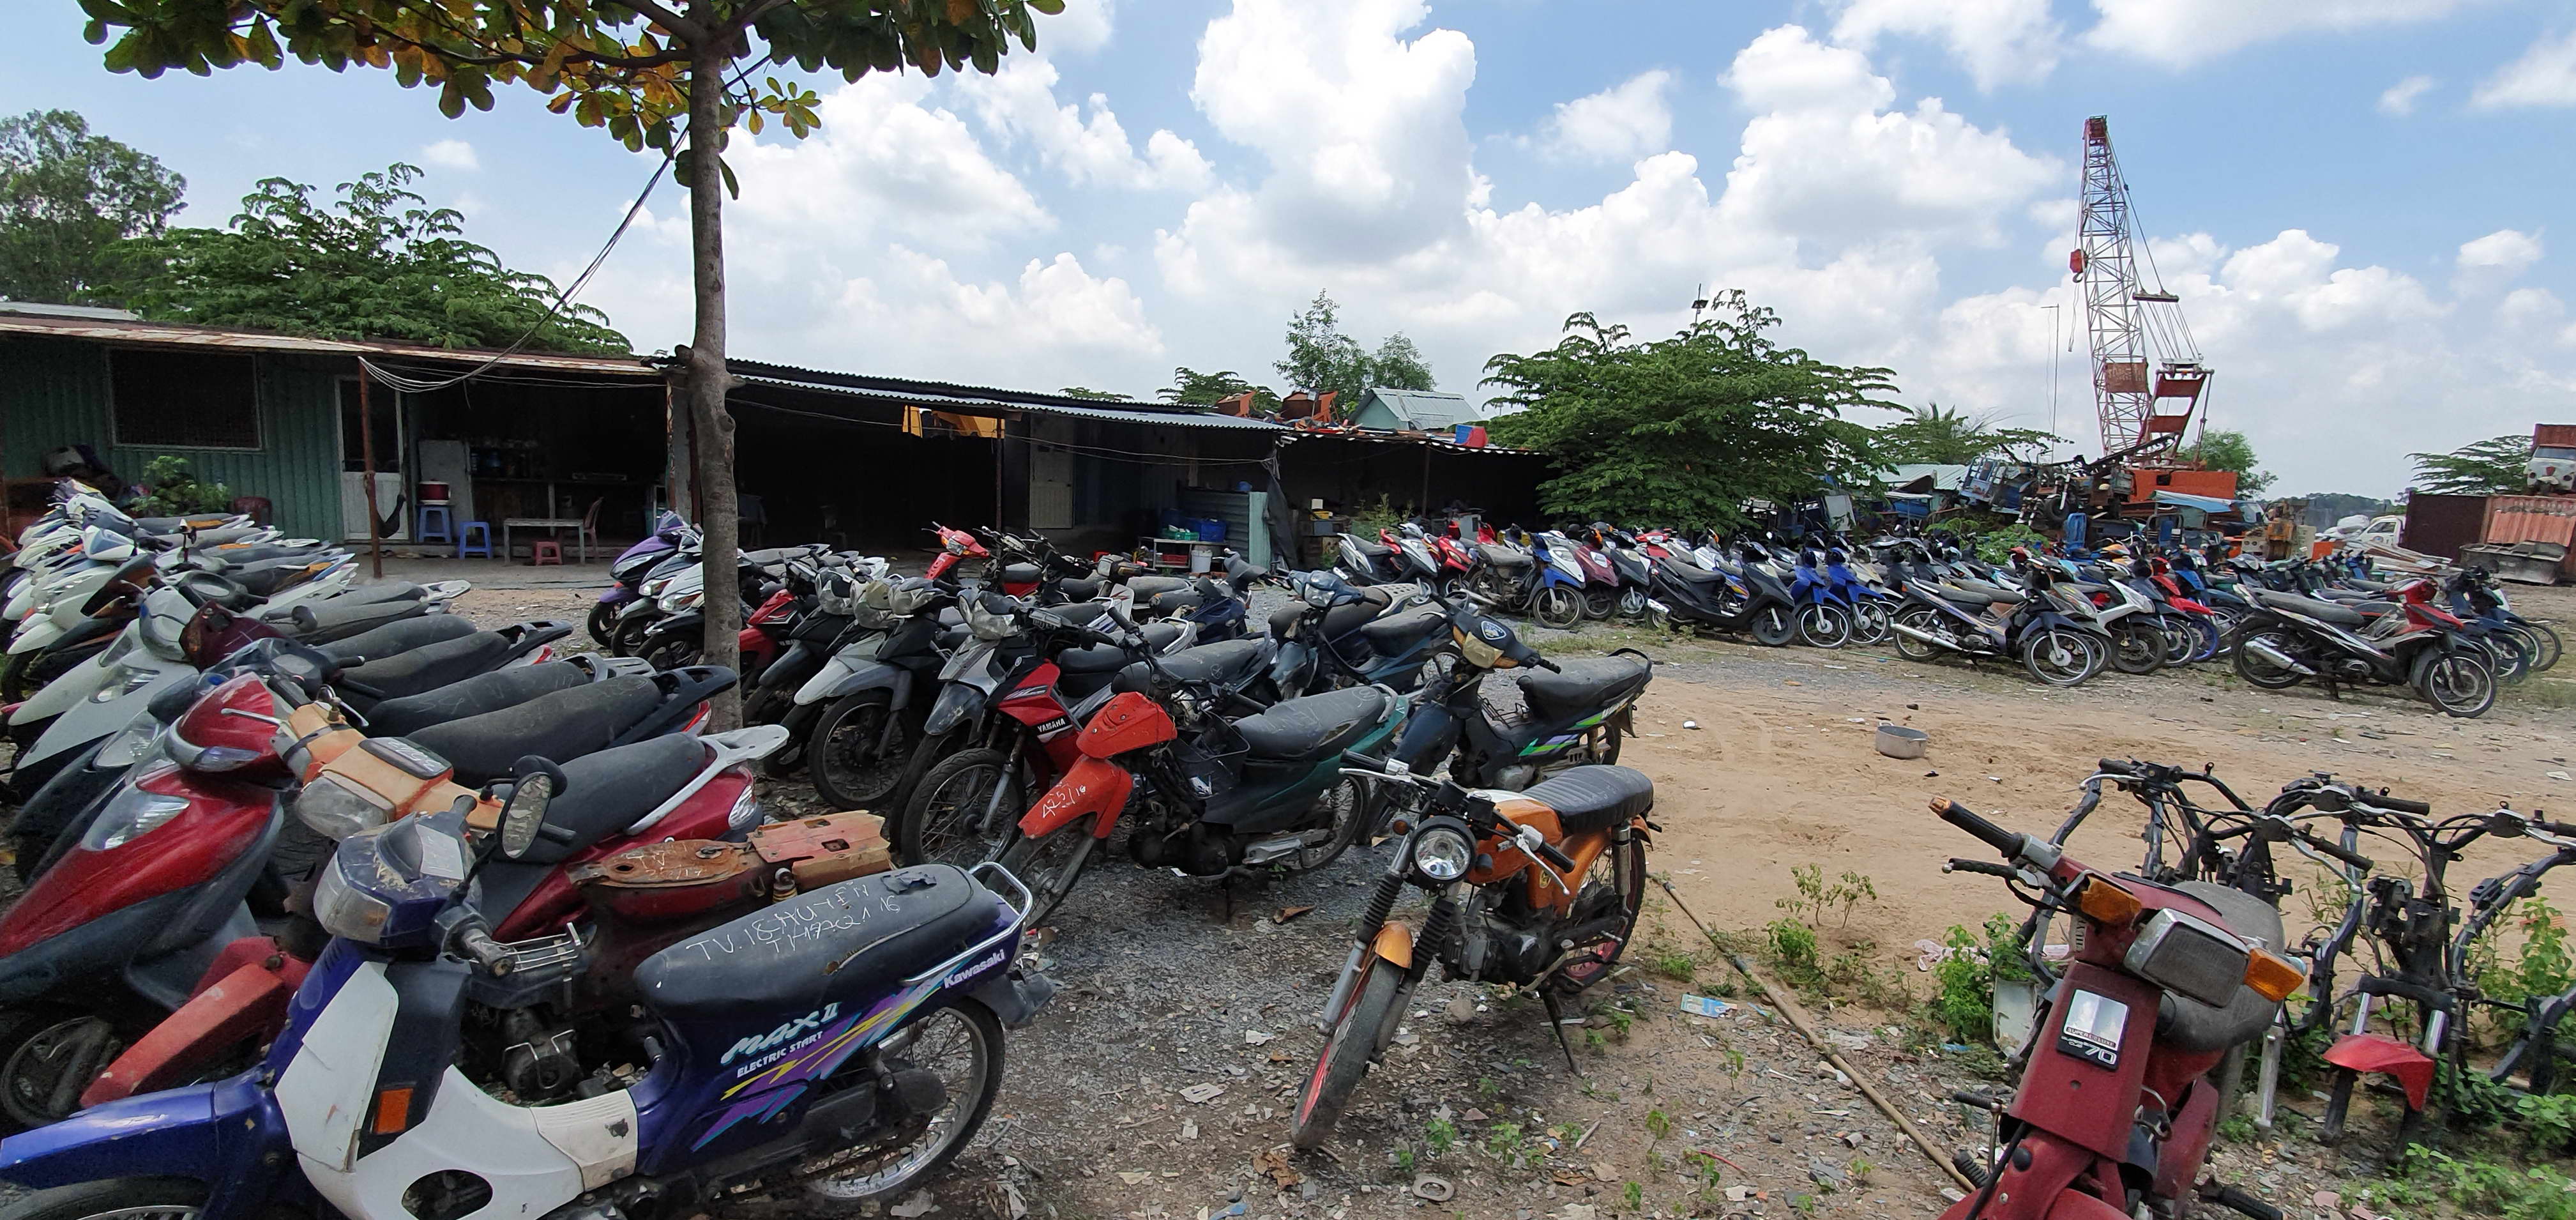 Chuyên Bán xe đạp điện cũ giá rẻ bảo hành dài tại Bắc Giang